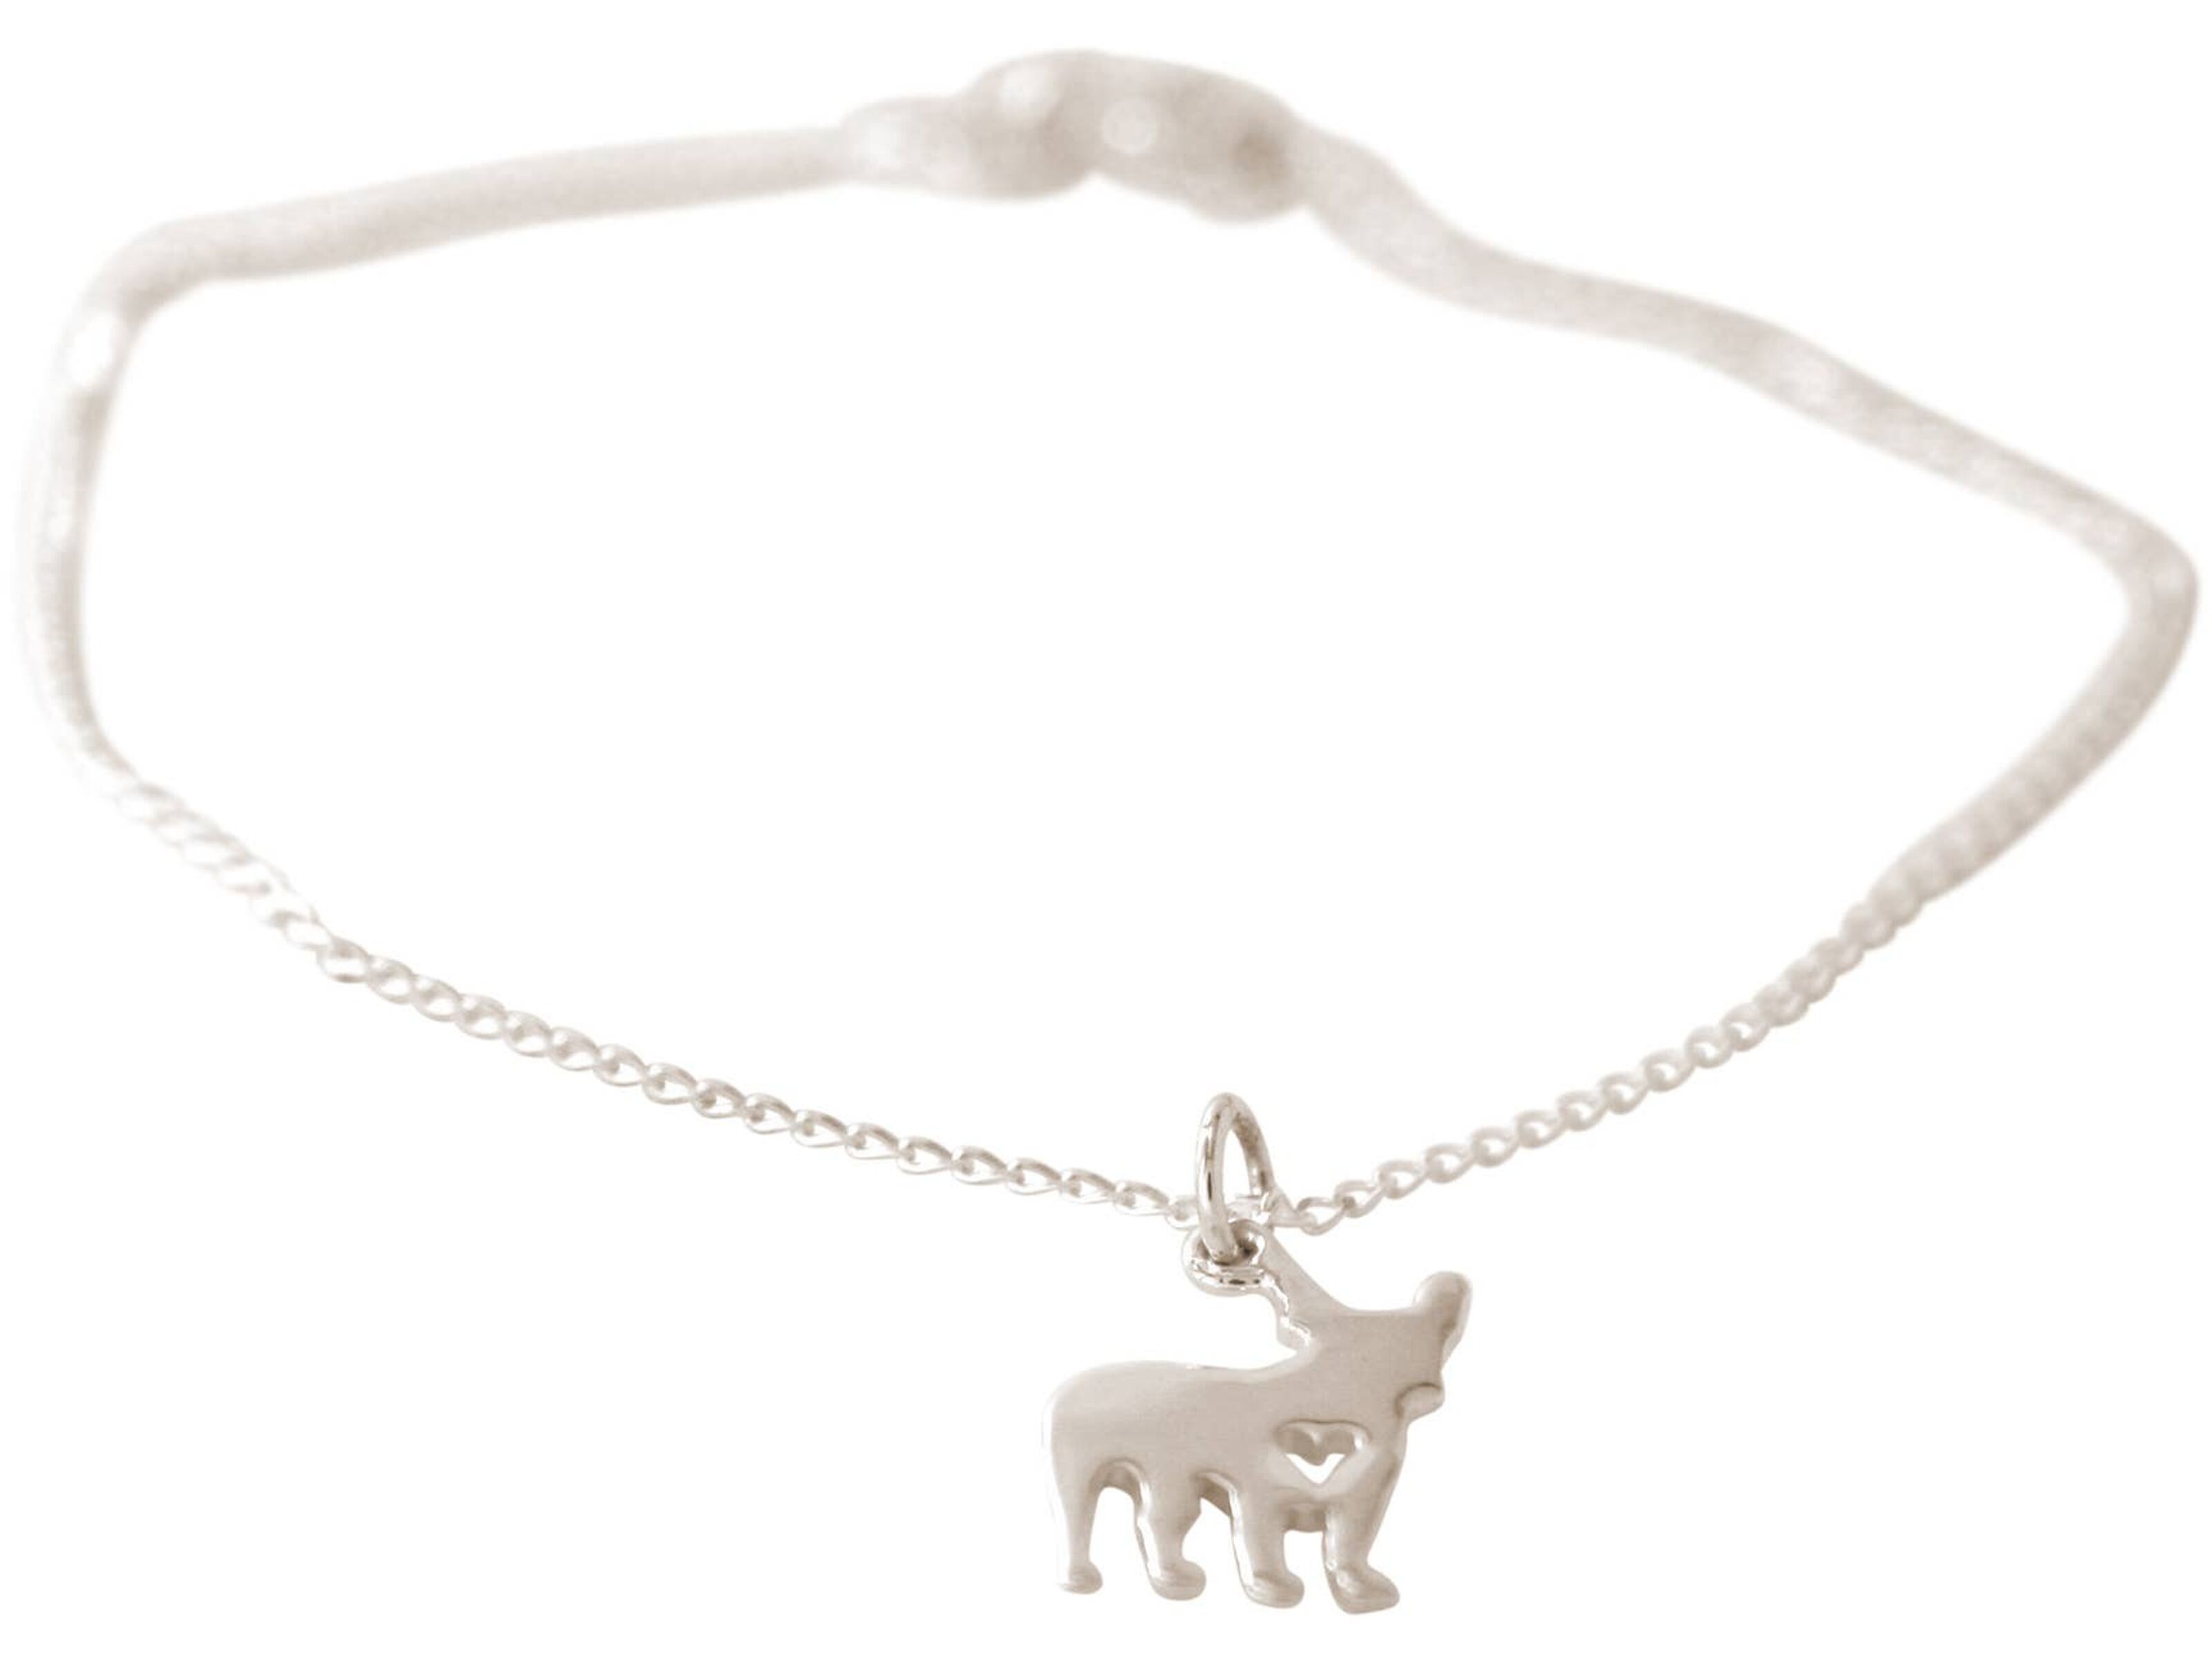 Gemshine Halskette Französische Bulldogge Hund mit Saphir Anhänger in 925  Silber, vergoldet oder rose. Geschenk für Haustier Herrchen, Frauchen –  Made